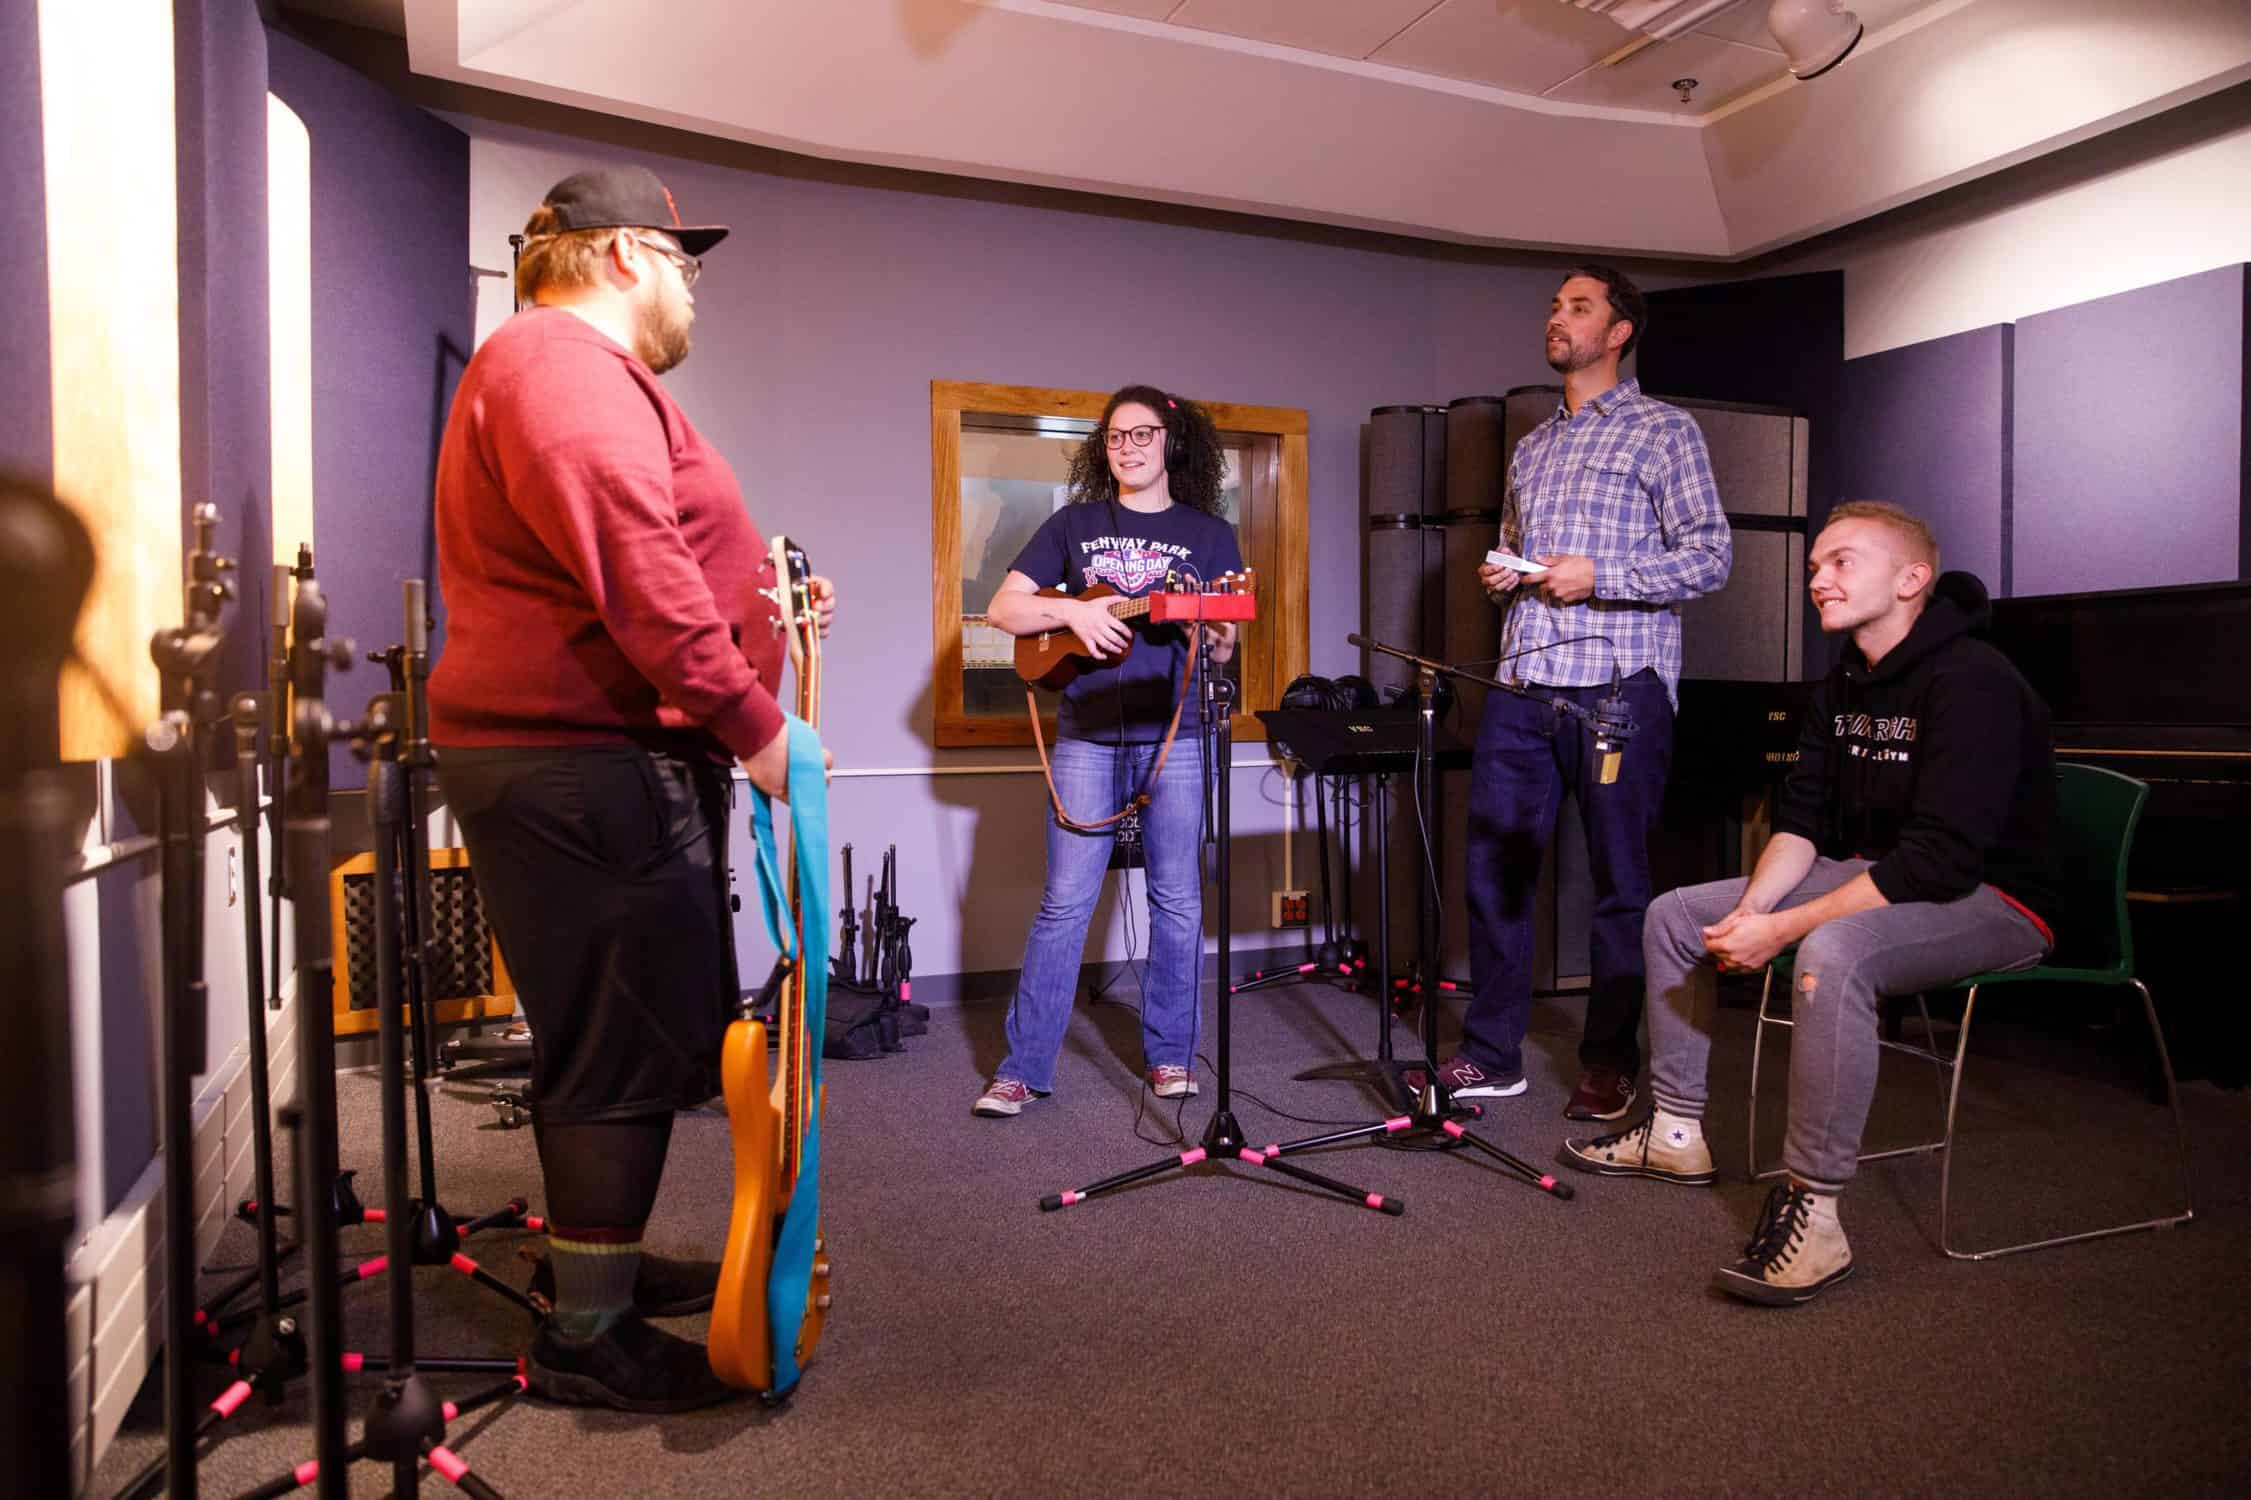 Students prepare to record music in the recording studio